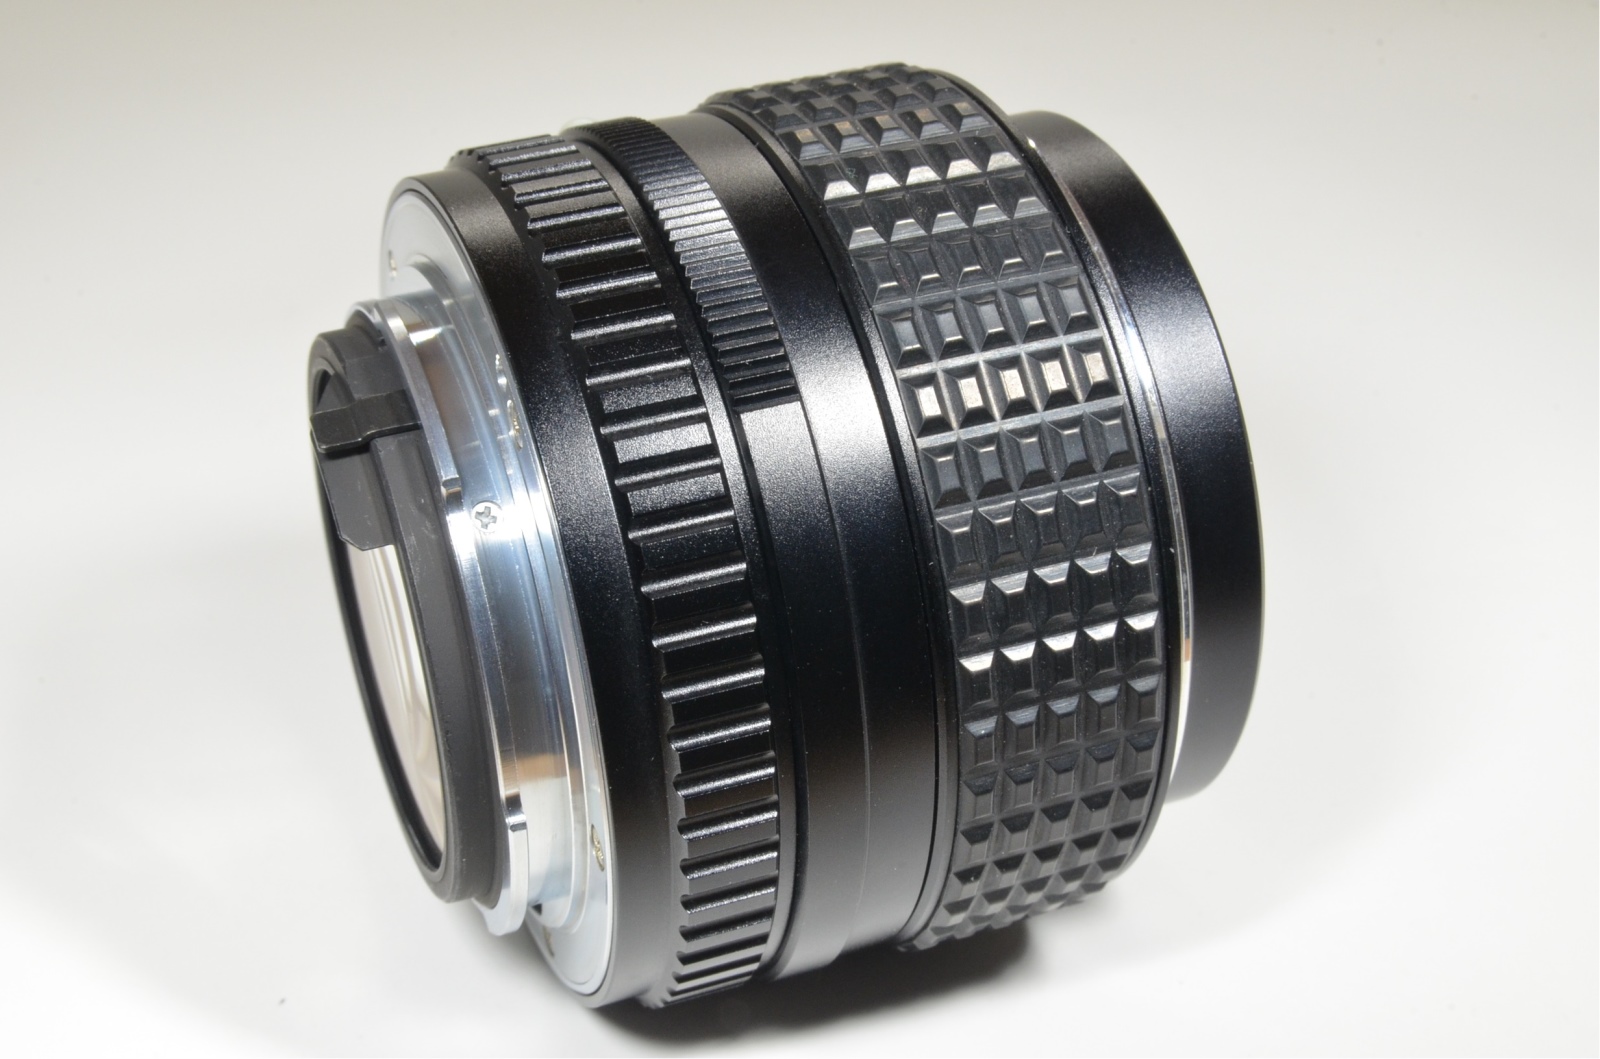 Asahi smc PENTAX 50mm F/1.2 Lens for K Mount from Japan #a0996